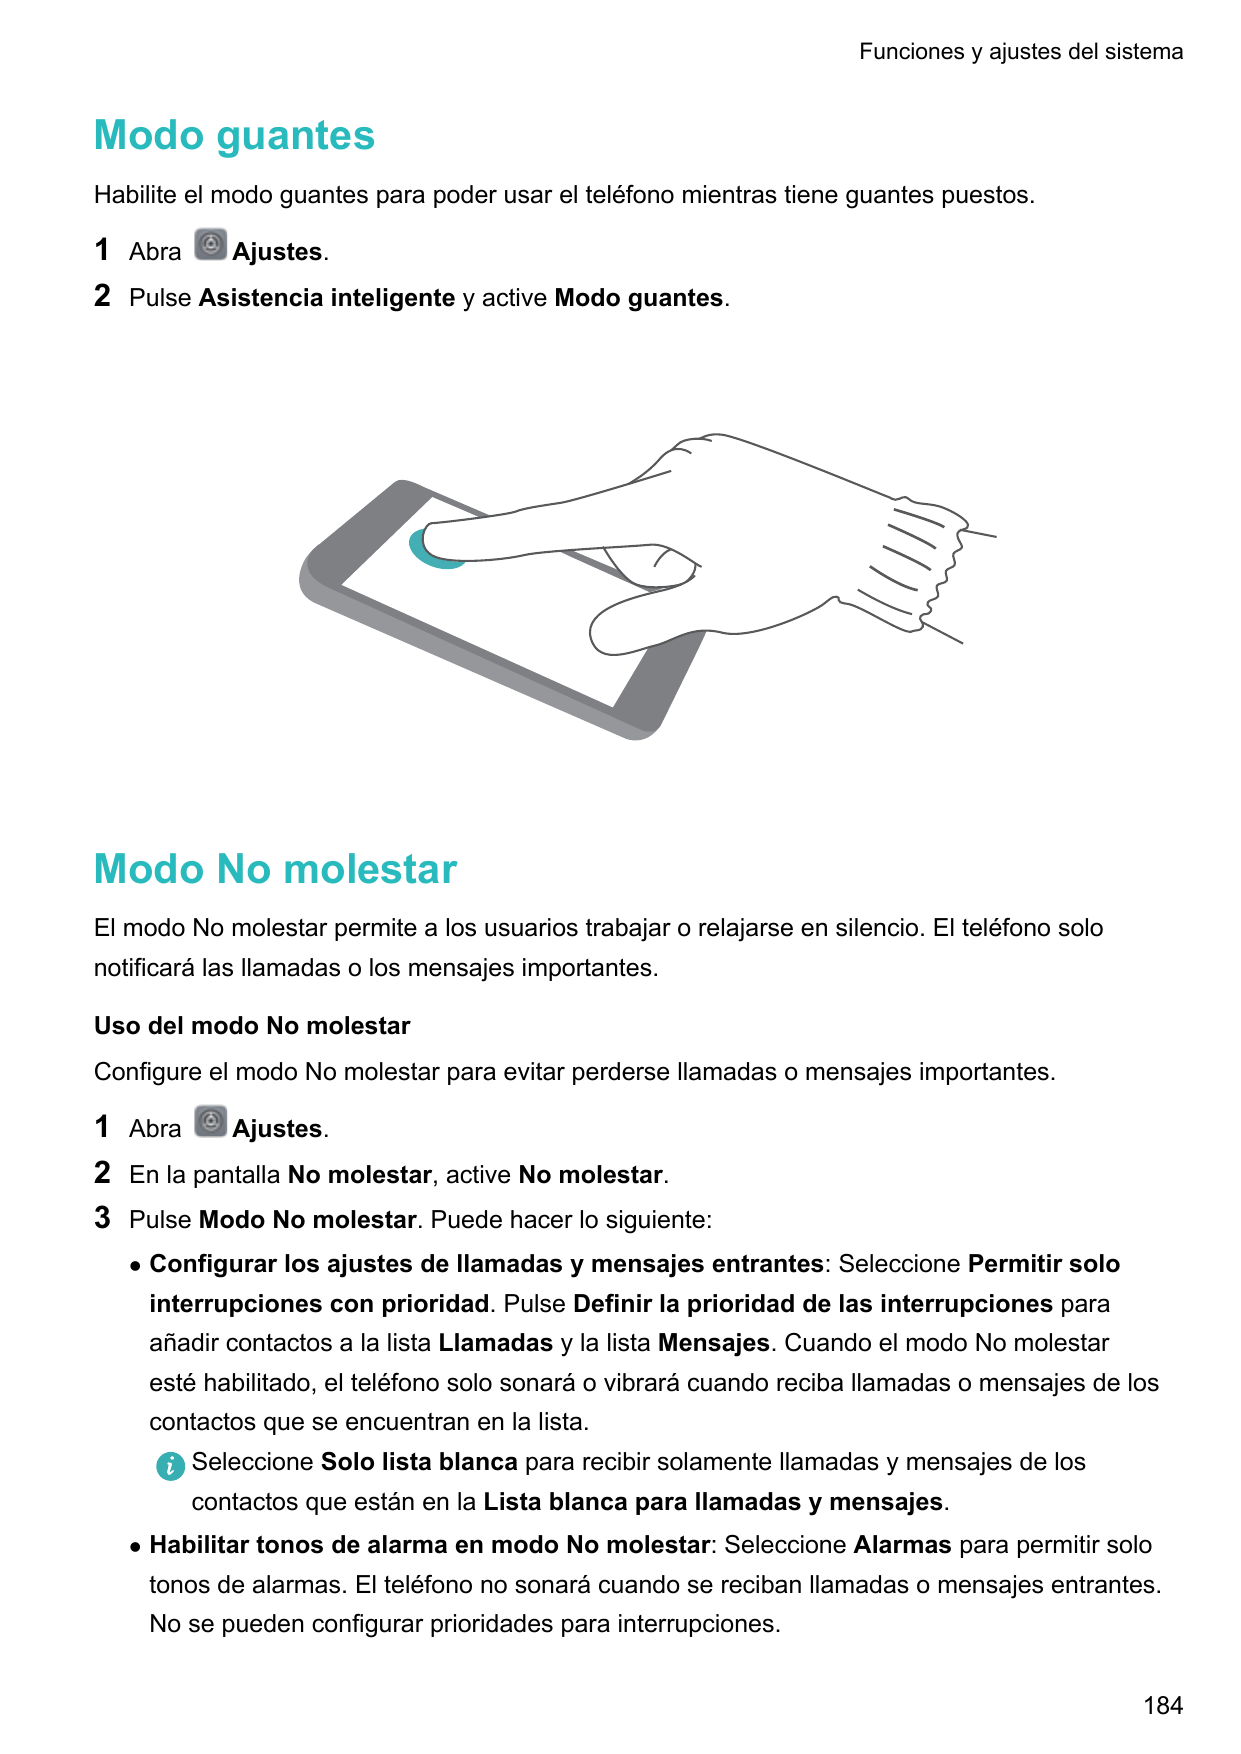 Funciones y ajustes del sistemaModo guantesHabilite el modo guantes para poder usar el teléfono mientras tiene guantes puestos.1